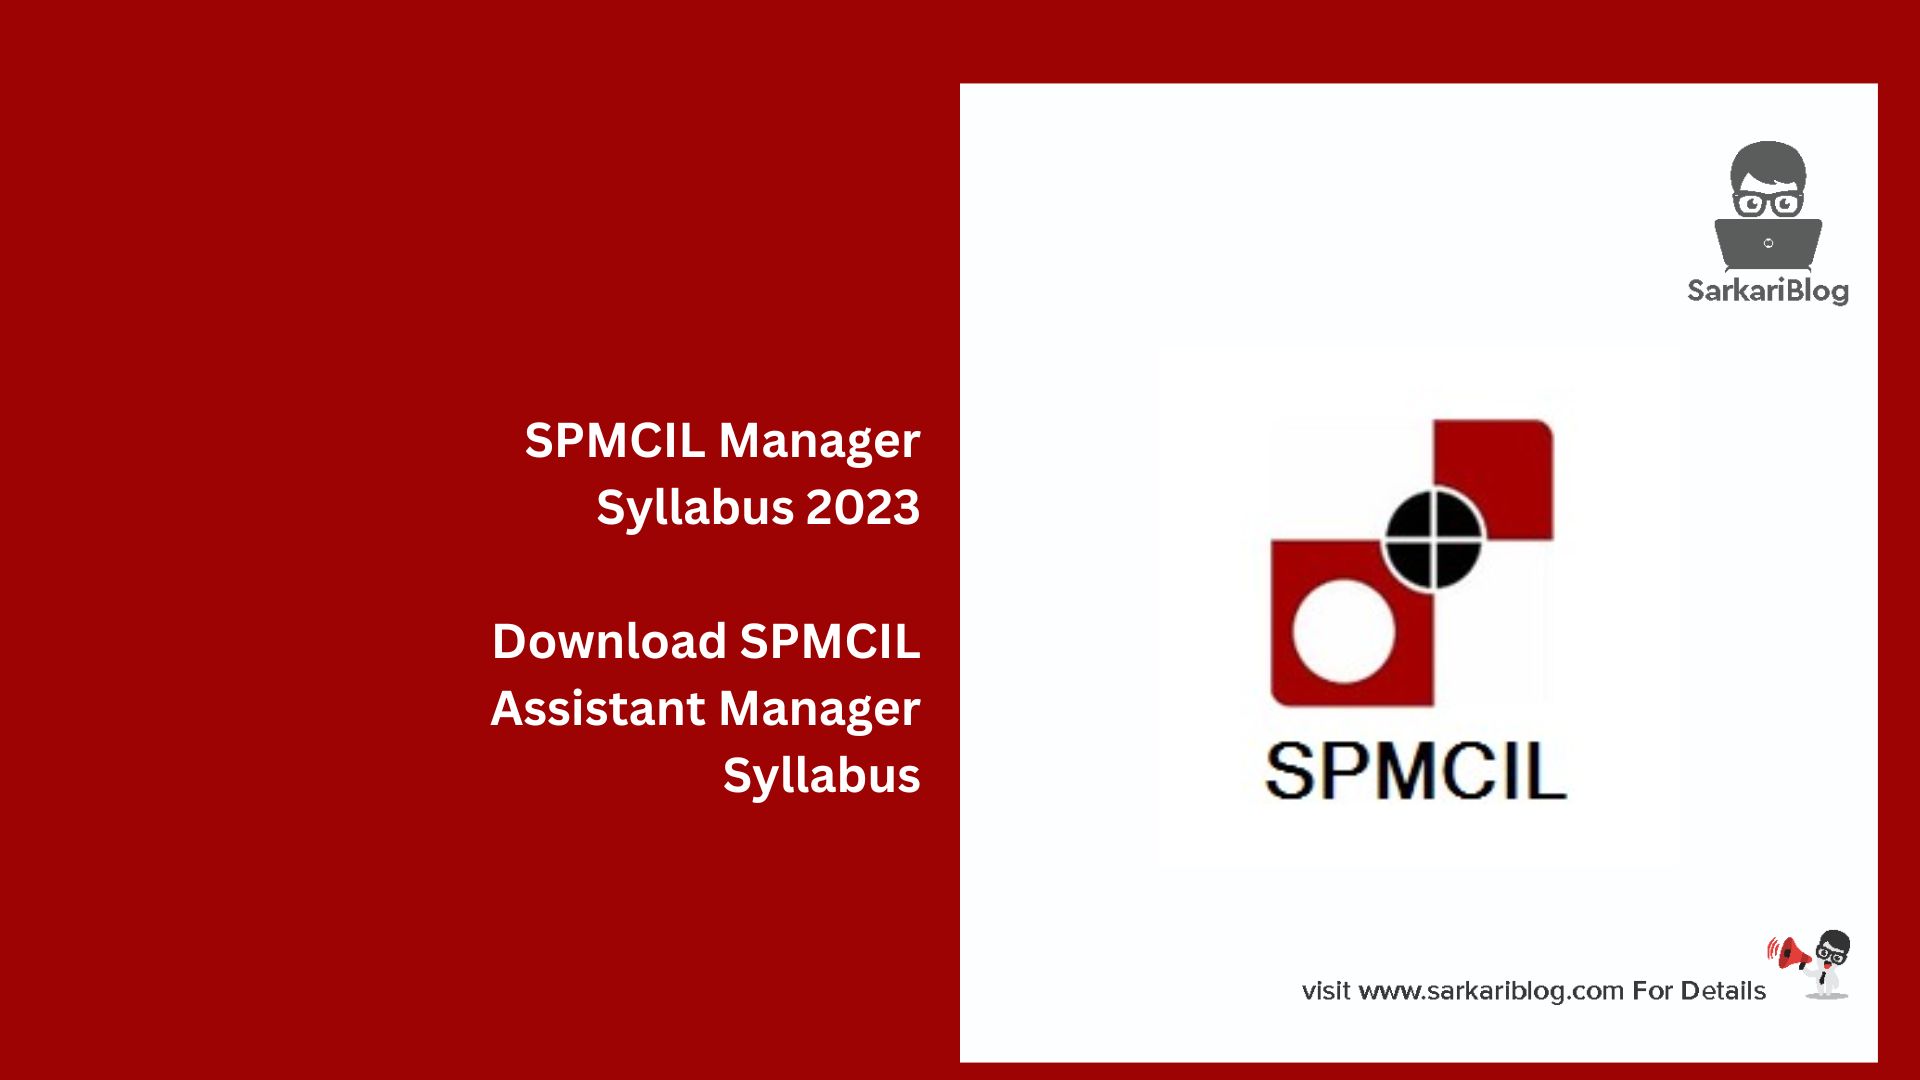 SPMCIL Manager Syllabus 2023